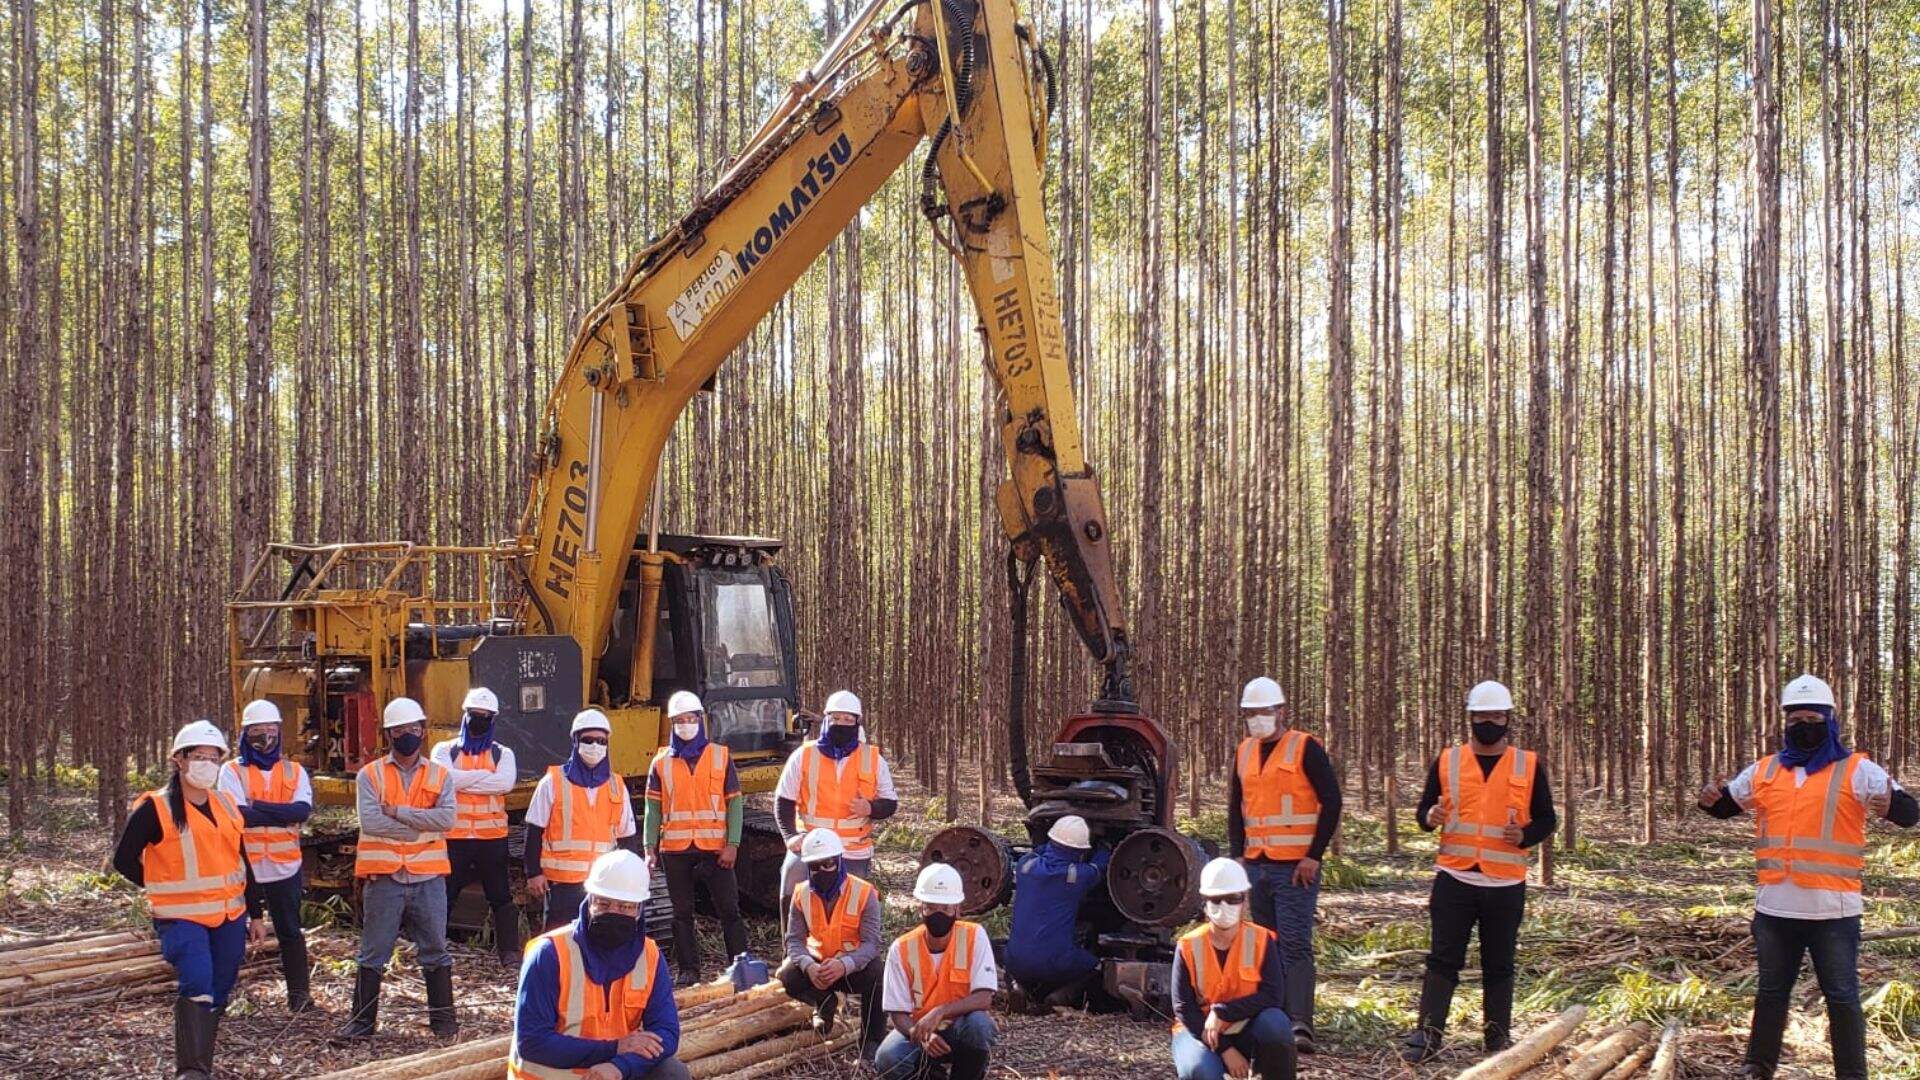 Multinacional está com 28 vagas abertas para atuar em operações em florestas de eucalipto